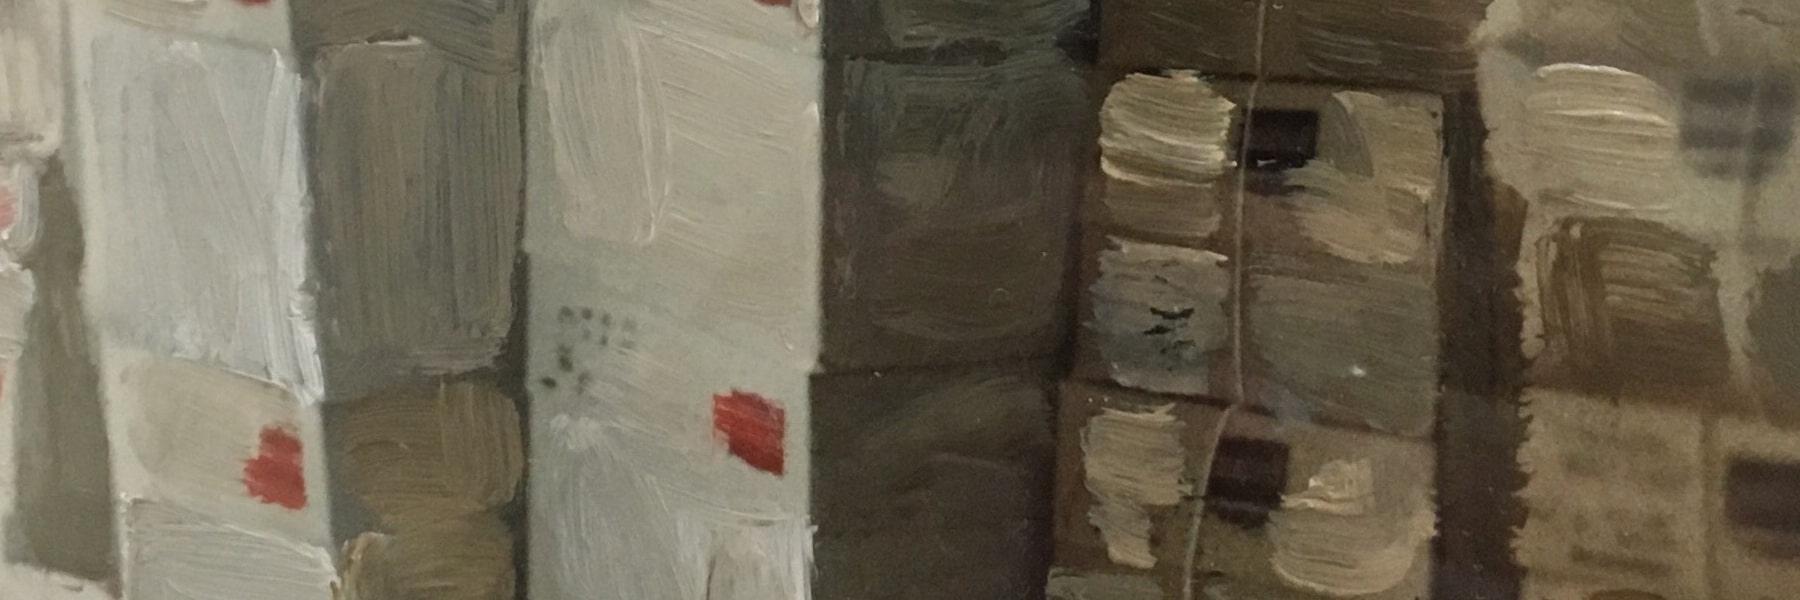 芭芭拉·科恩的画作收藏在亚伦·莱克莱德的画作收藏中，作为档案束